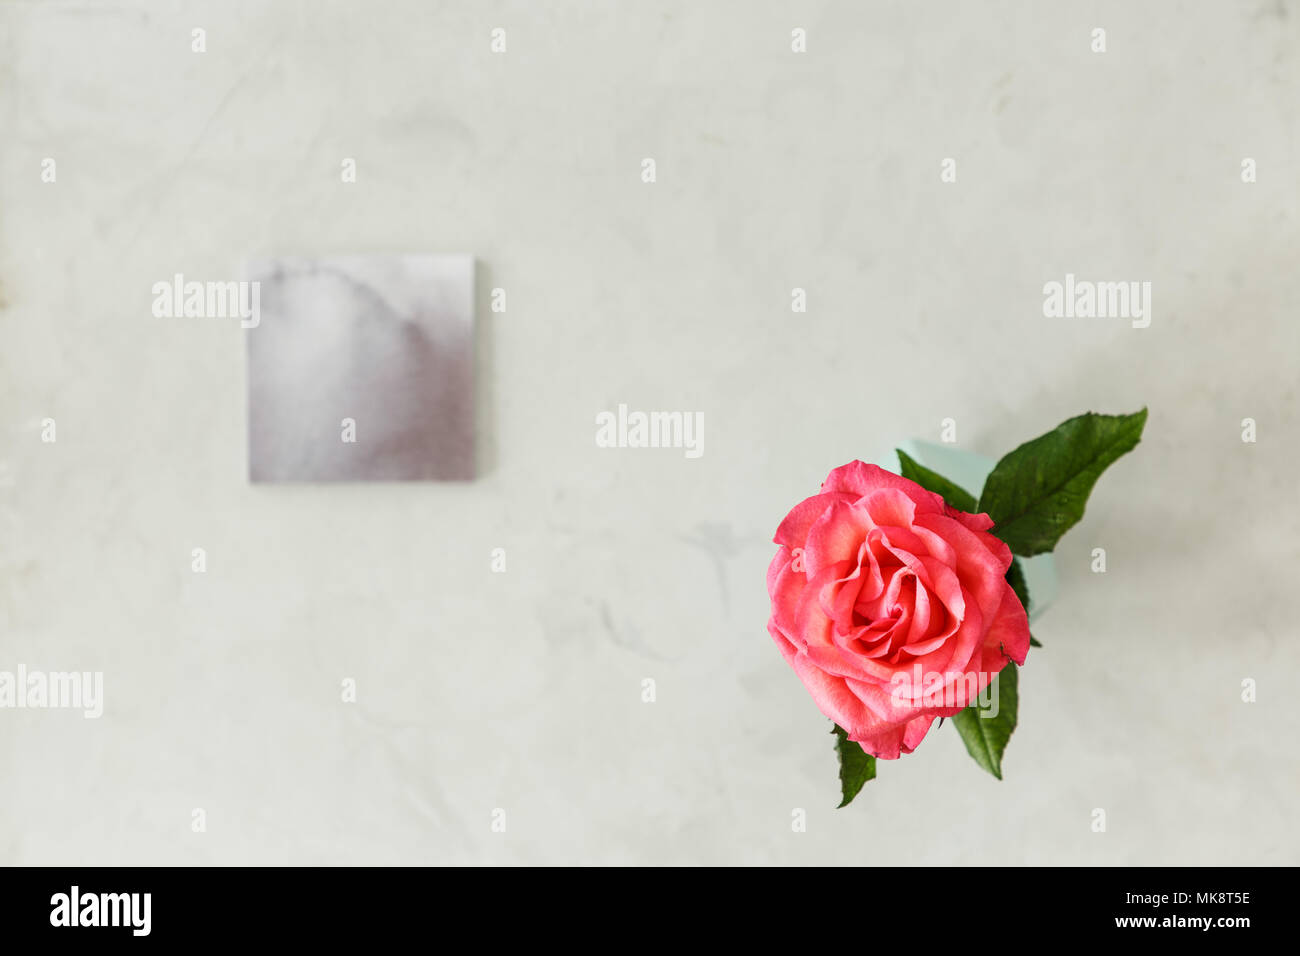 Vue de dessus une rose rose sur fond lumineux avec copie espace. Concept de fleurs d'anniversaire Banque D'Images